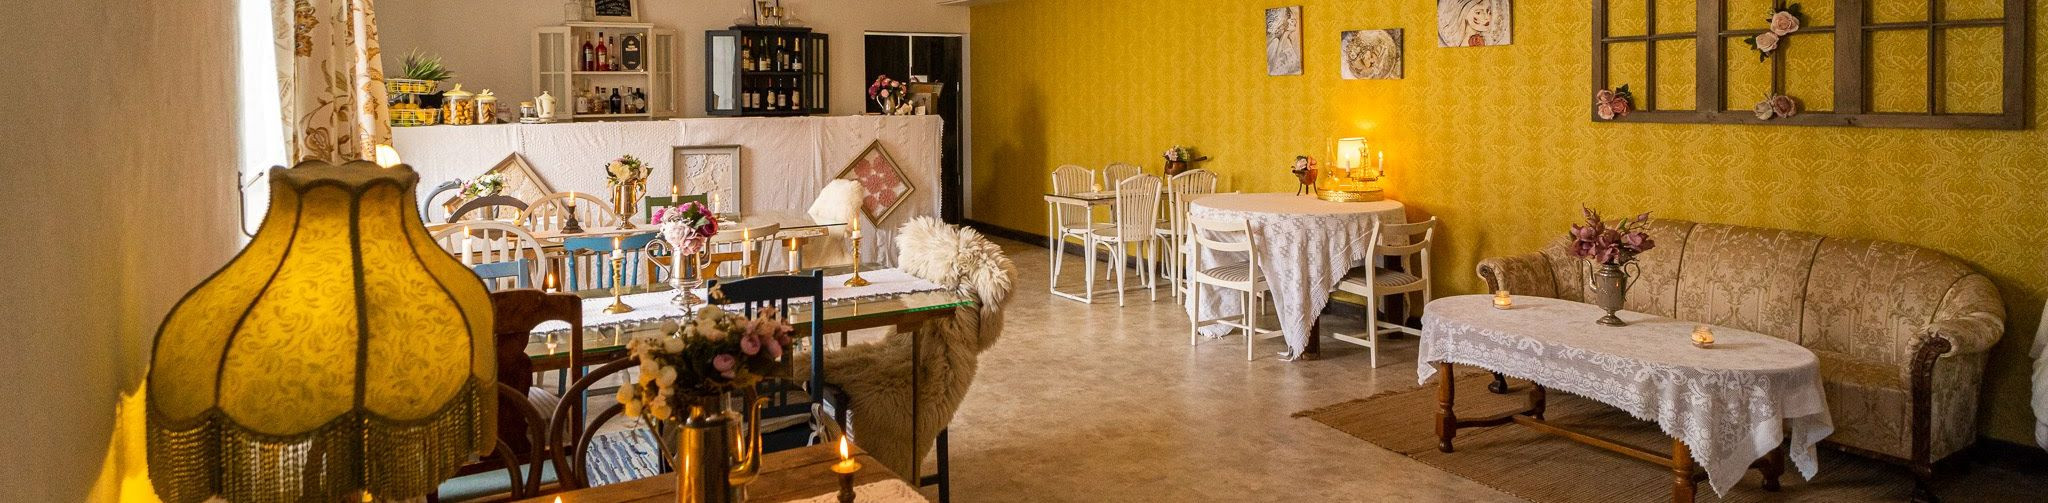 Padise Kastell on südamega loodud kohvik ja meeldejäävate elamuste kohtumispaik, mis on avatud kohvikuna, korraldame teie sündmusi ning pakume catering teenust.